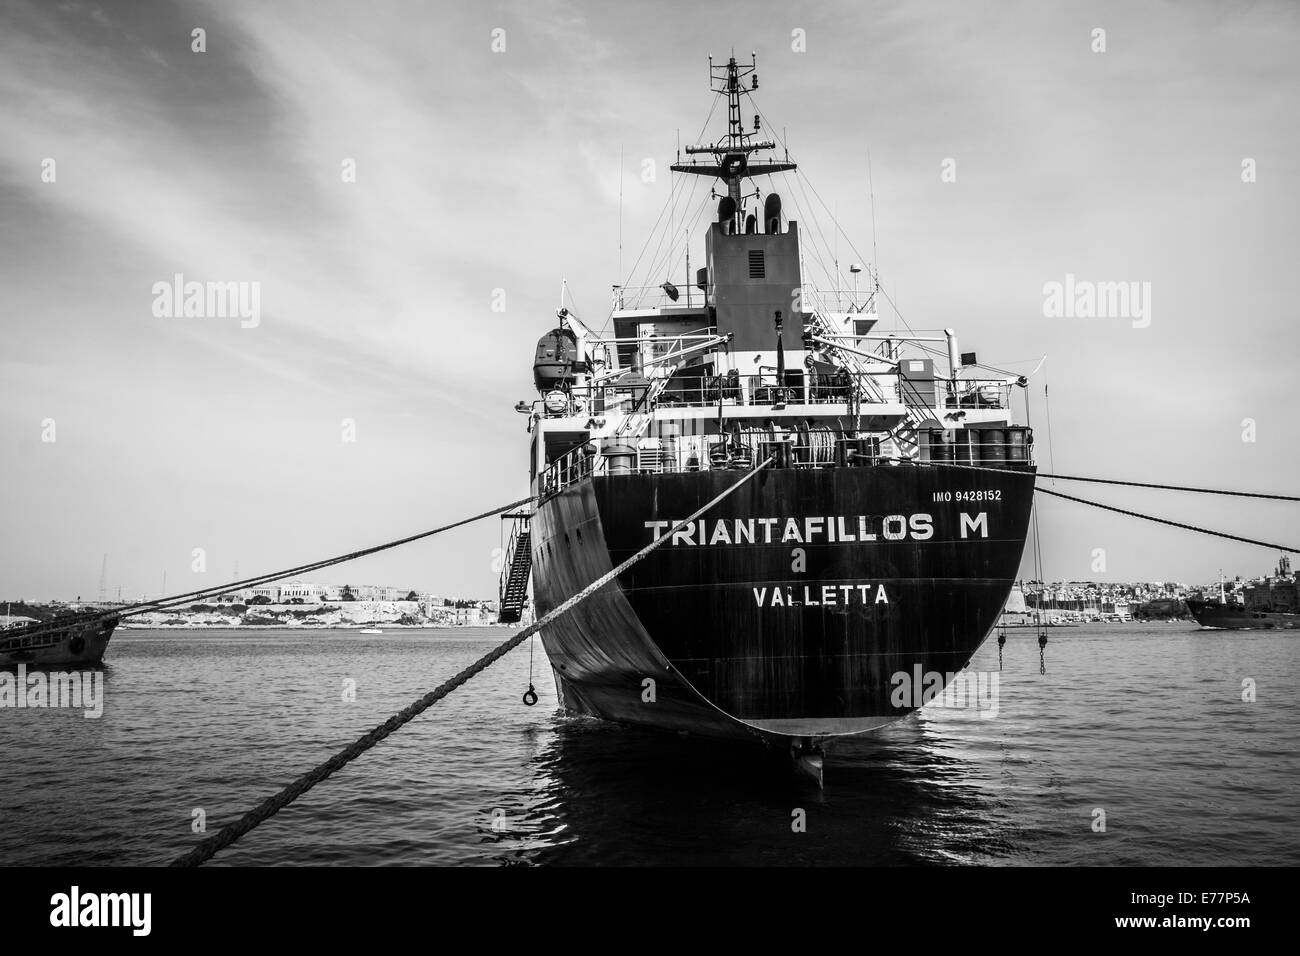 Tanker moored dans le Grand Port de La Valette, Malte Banque D'Images